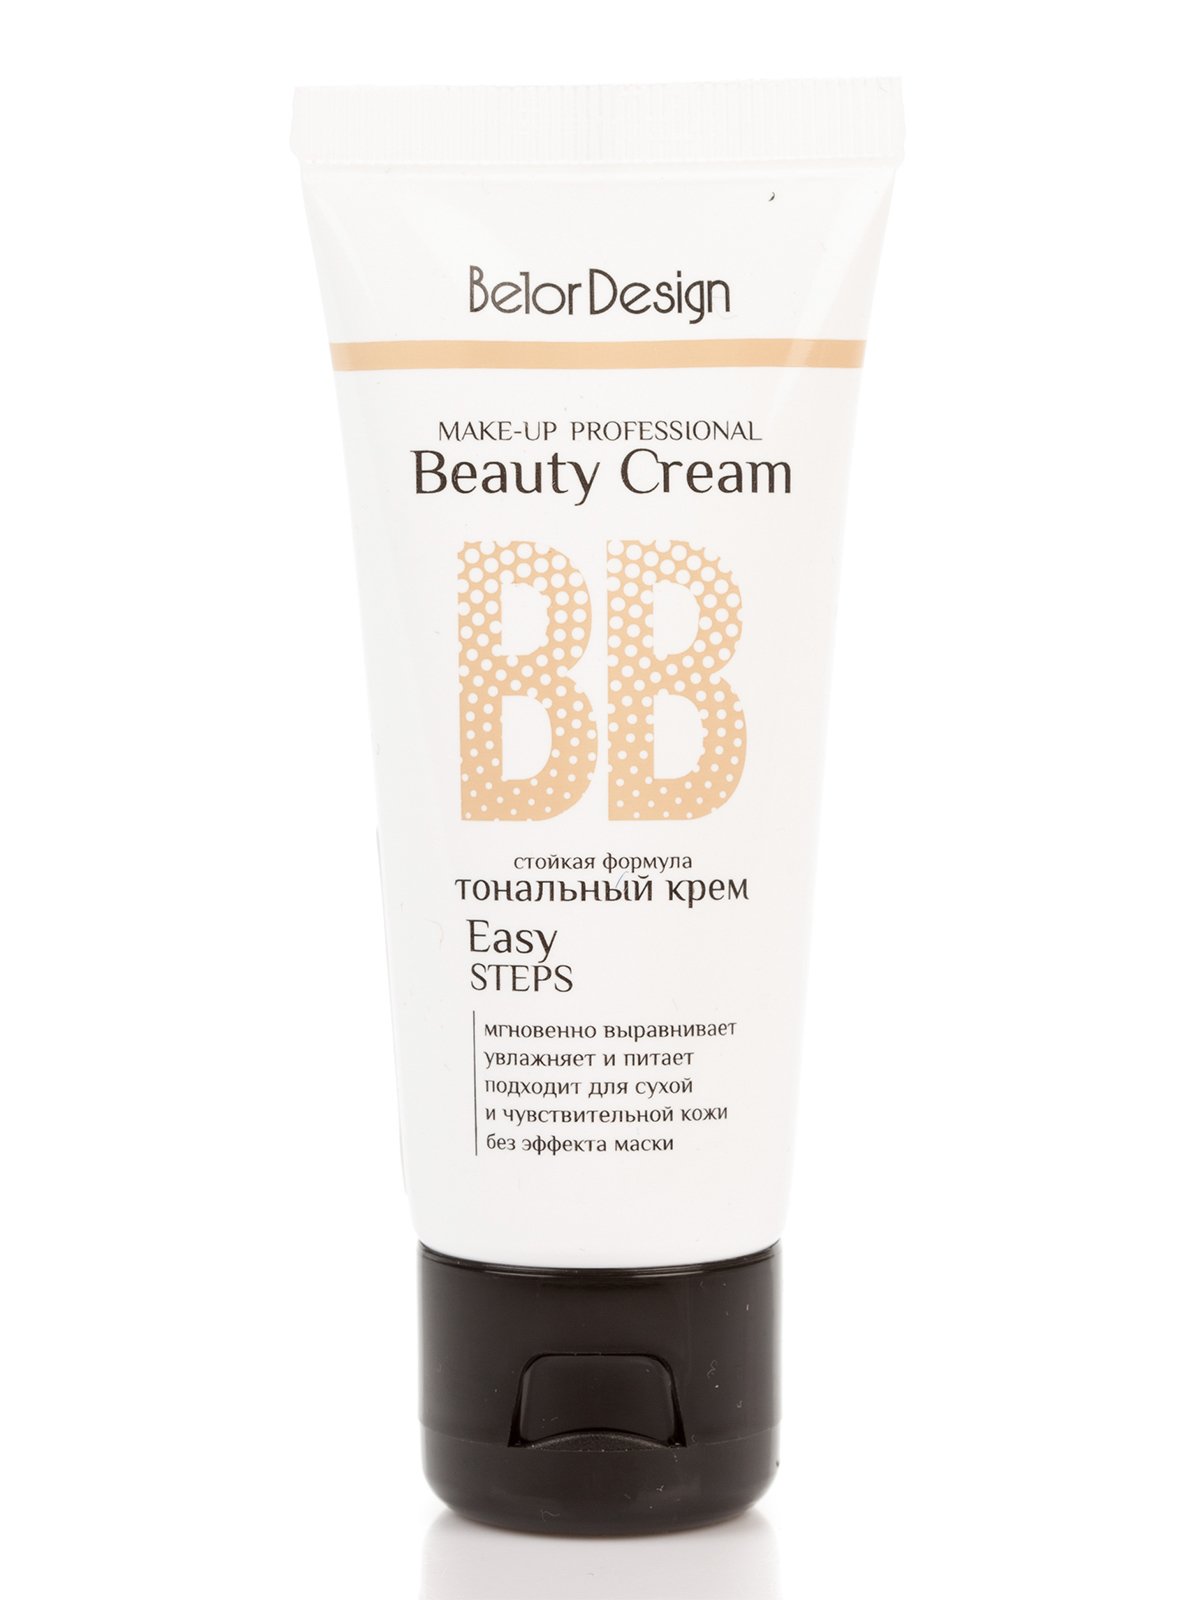 Тональный крем BB beauty cream (32 г) — тон 102 | 2320259